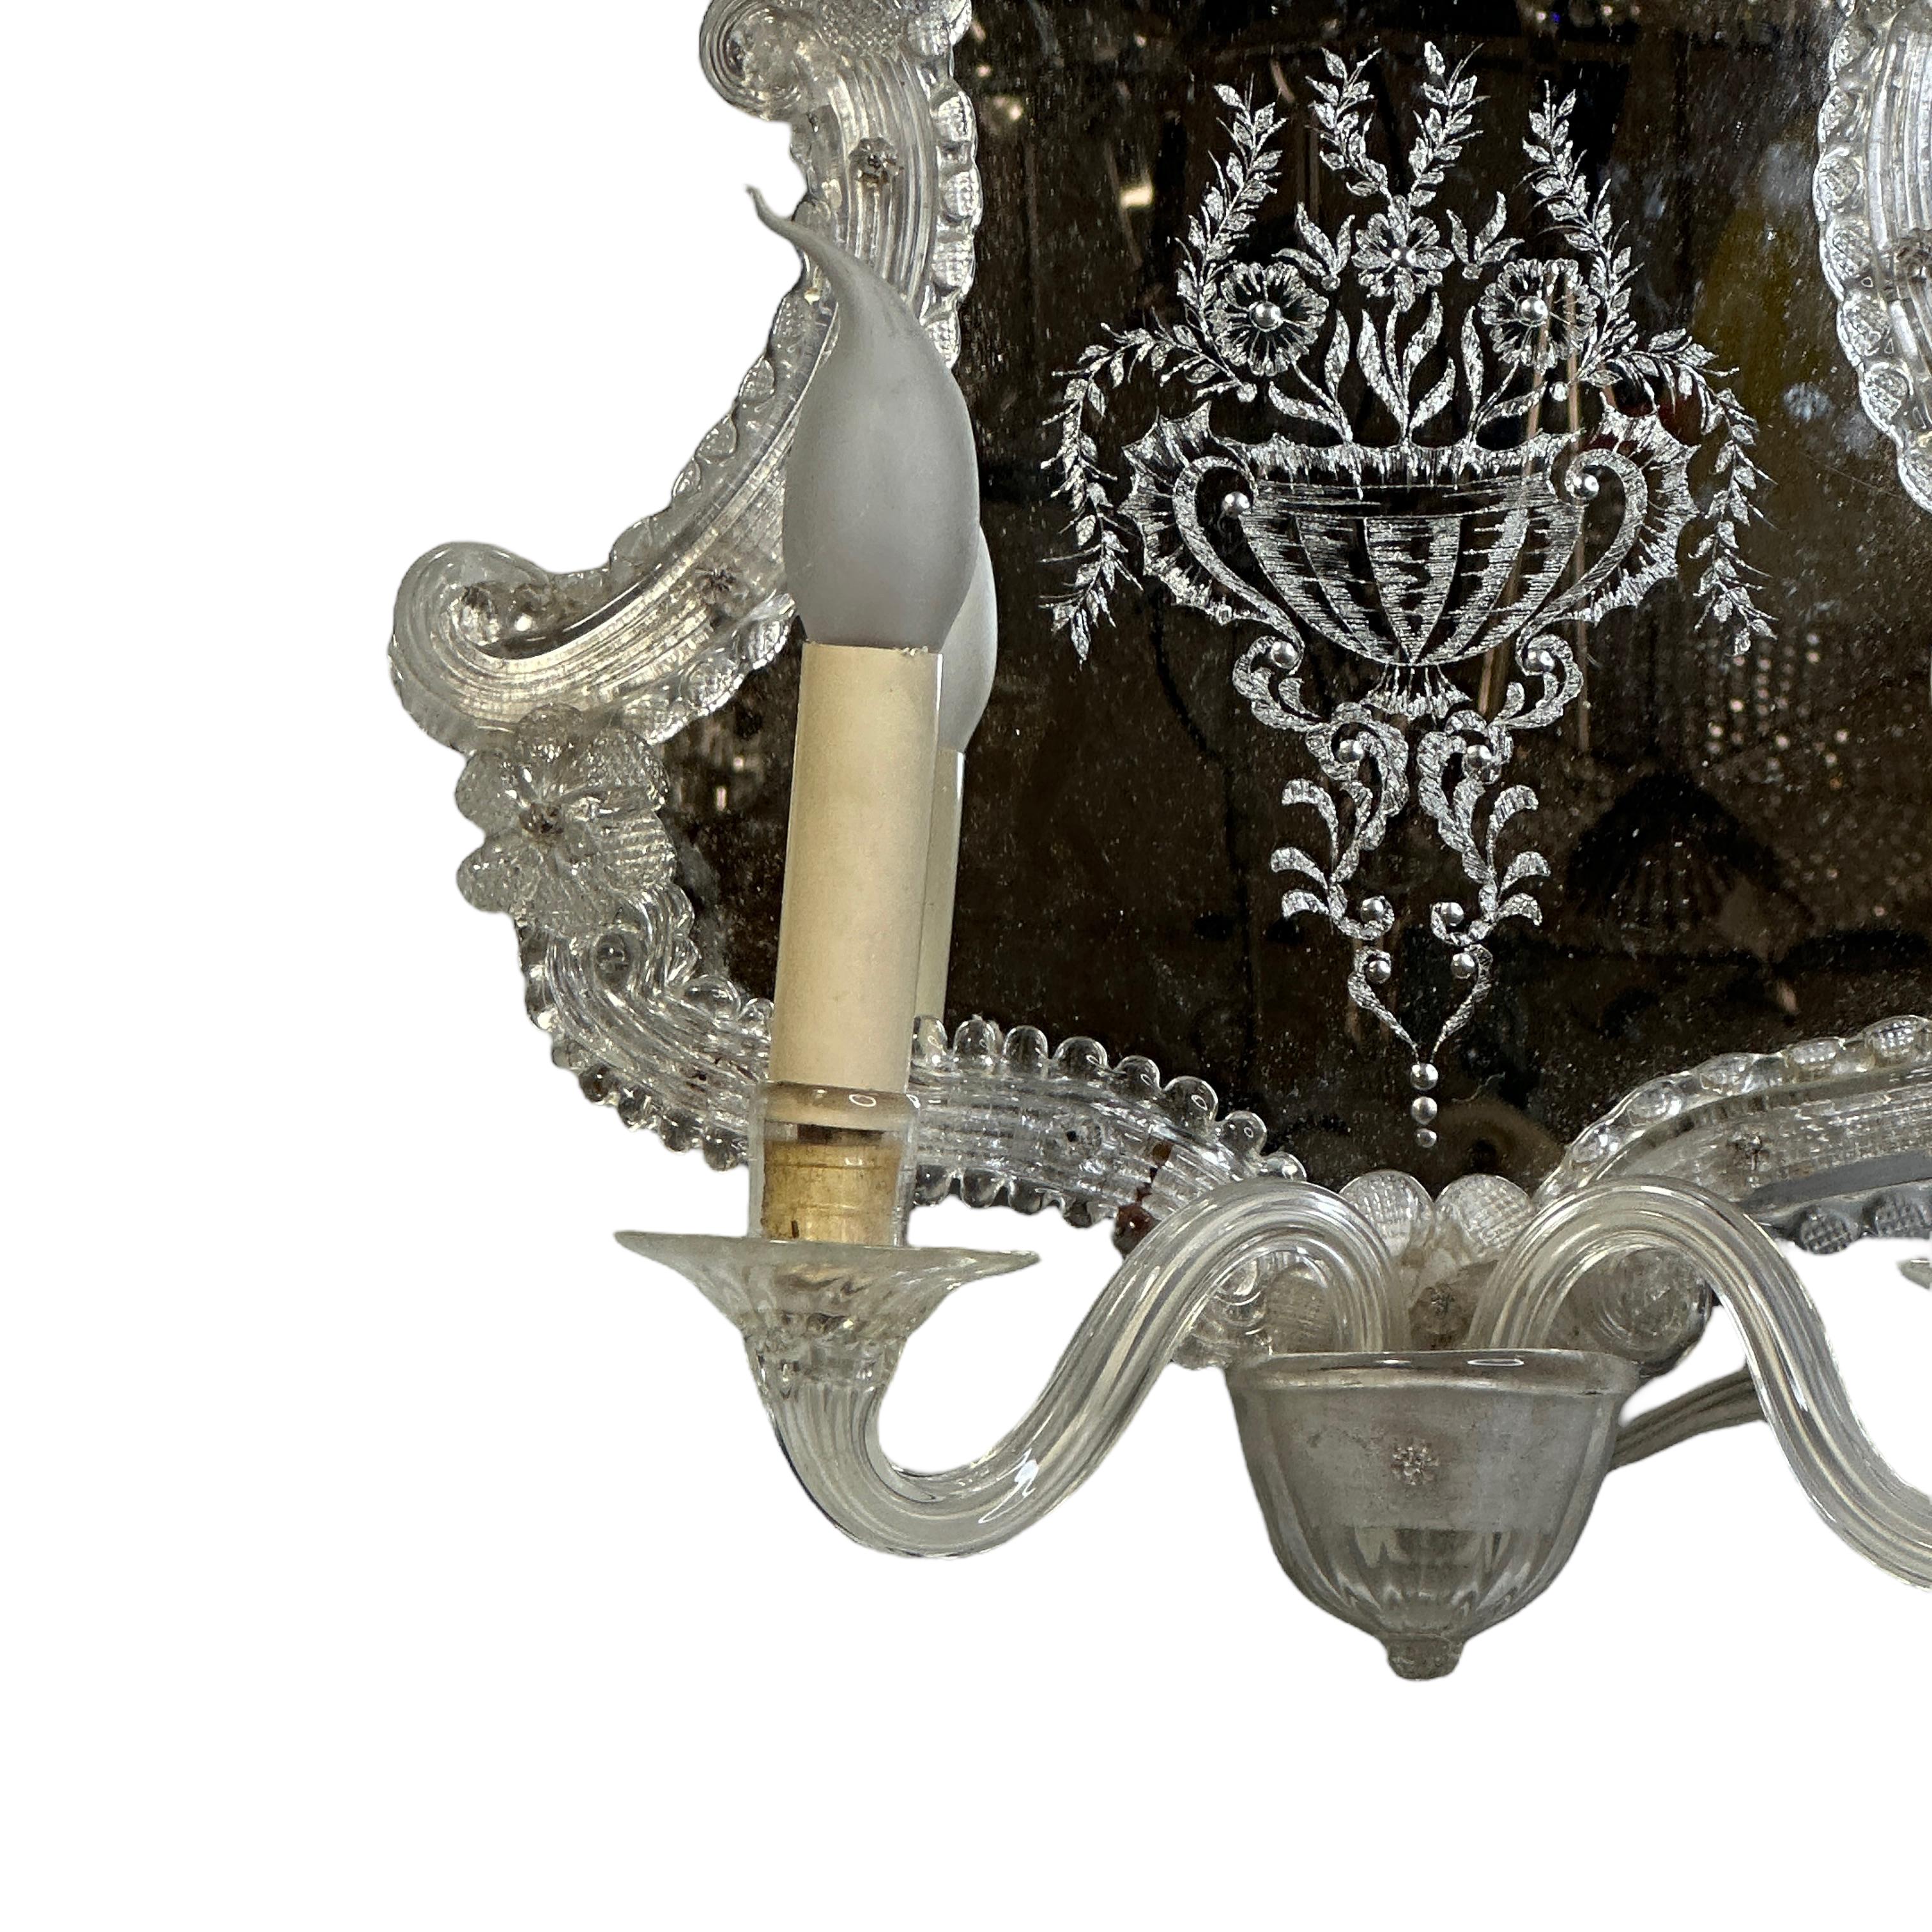 Vintage Italian Hollywood Regency-Stil Spiegel Wandleuchte mundgeblasen in klarem Murano-Glas mit dekorativen Details, antiqued Patina auf Spiegel, montiert auf Holz zurück Rahmen. Die Leuchte benötigt zwei europäische E14 / 110 Volt